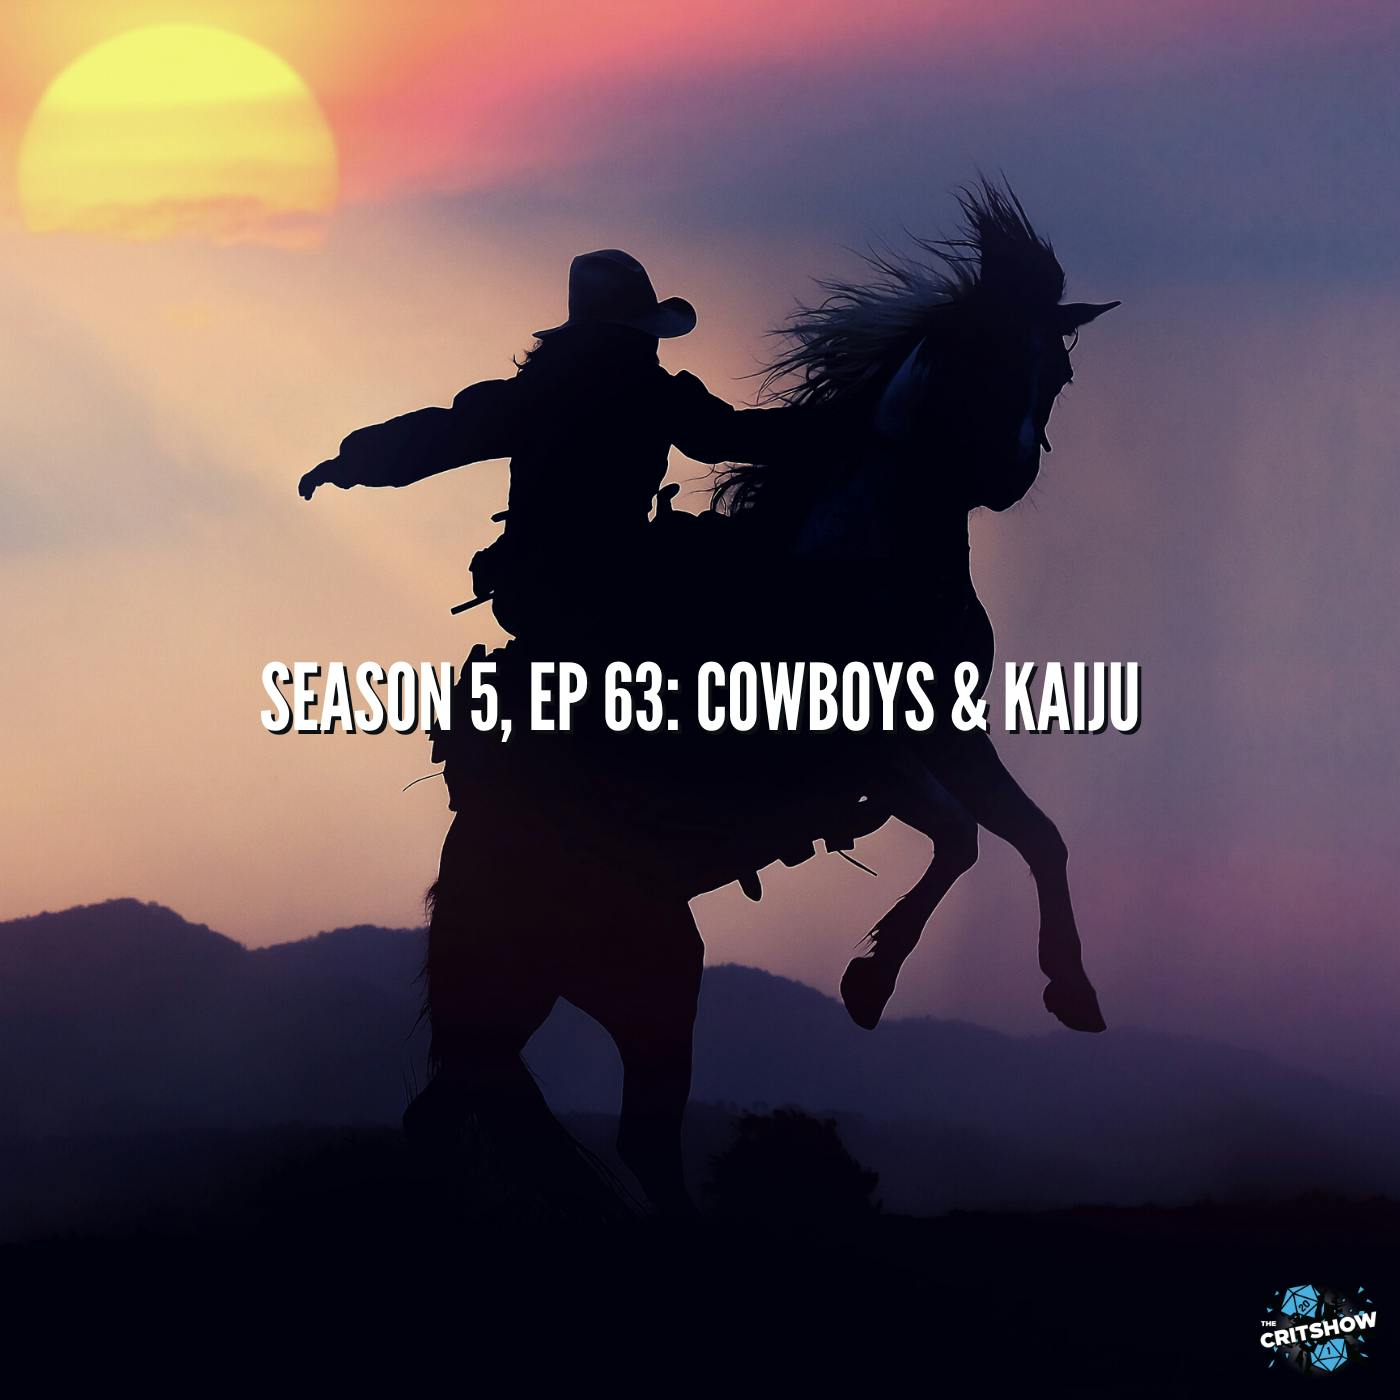 Cowboys & Kaiju (S5, E63)